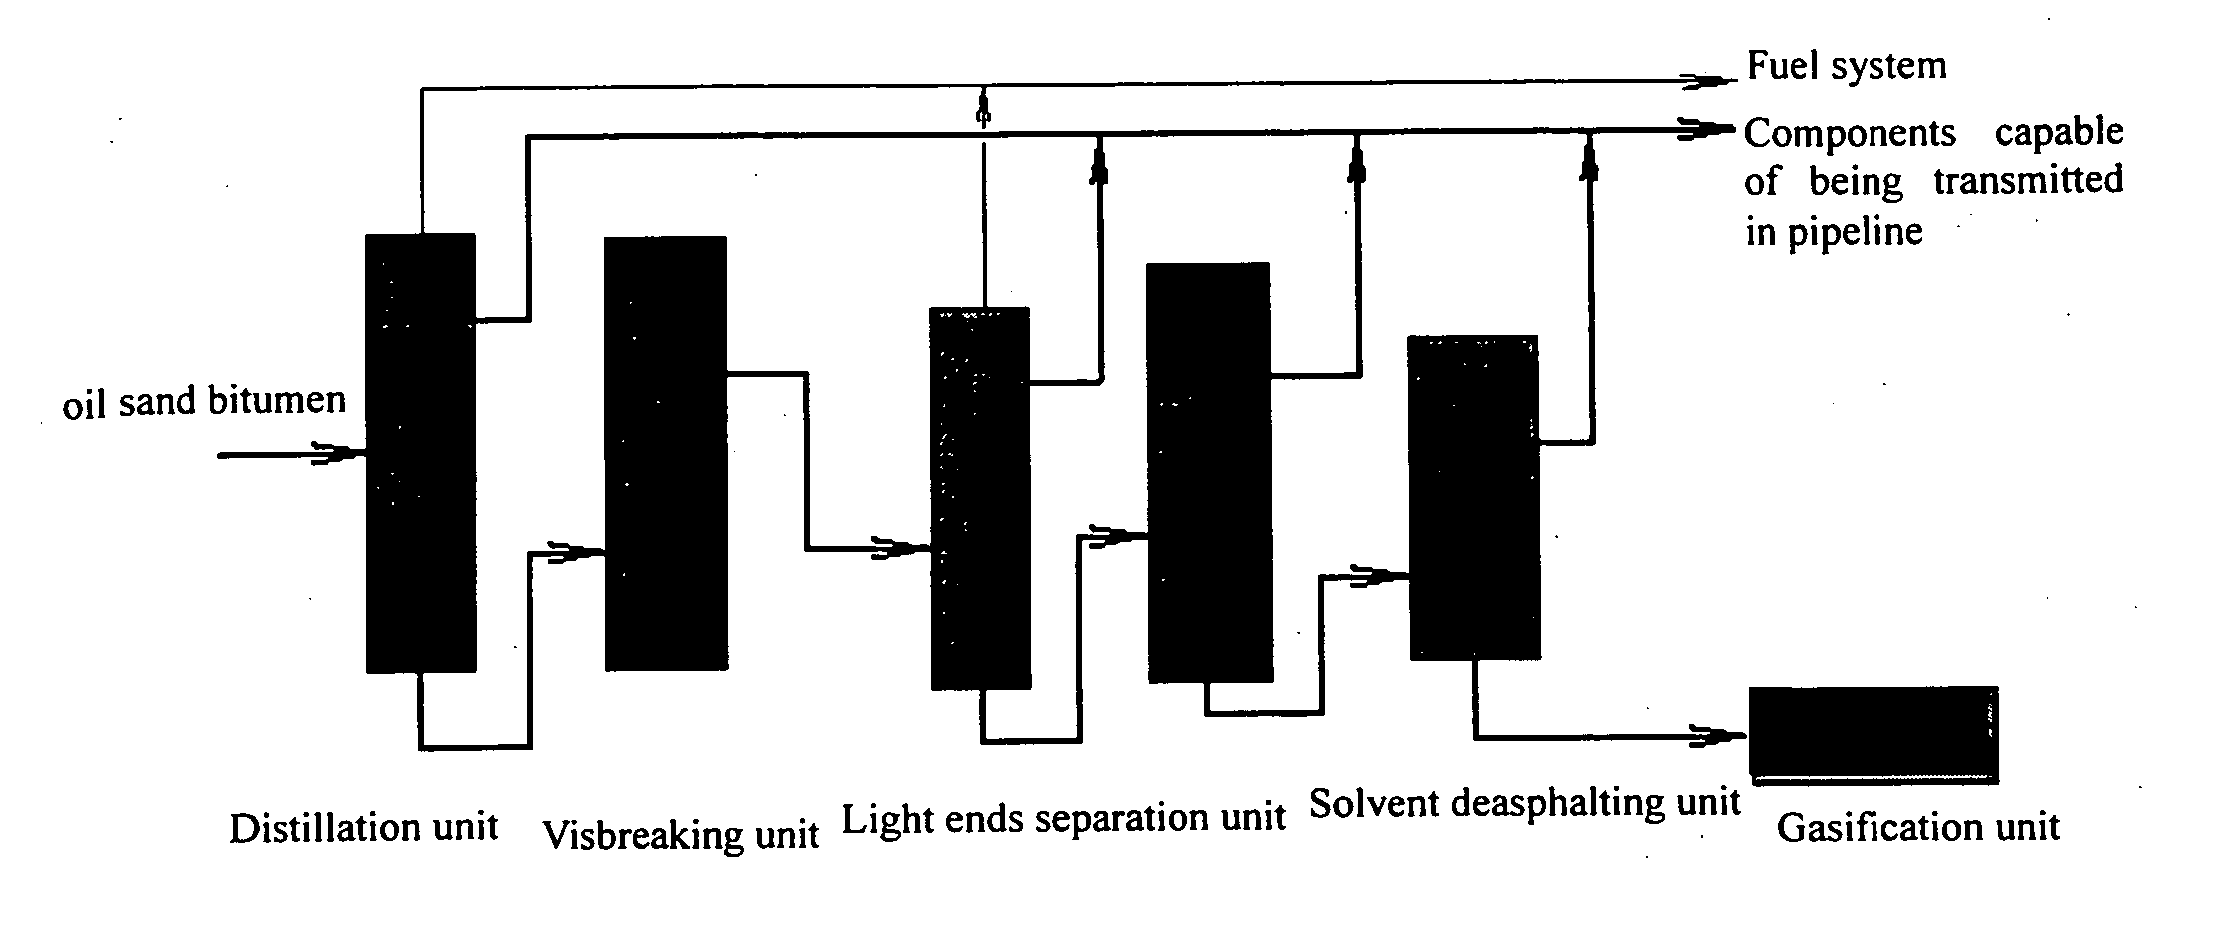 Method for processing oil sand bitumen